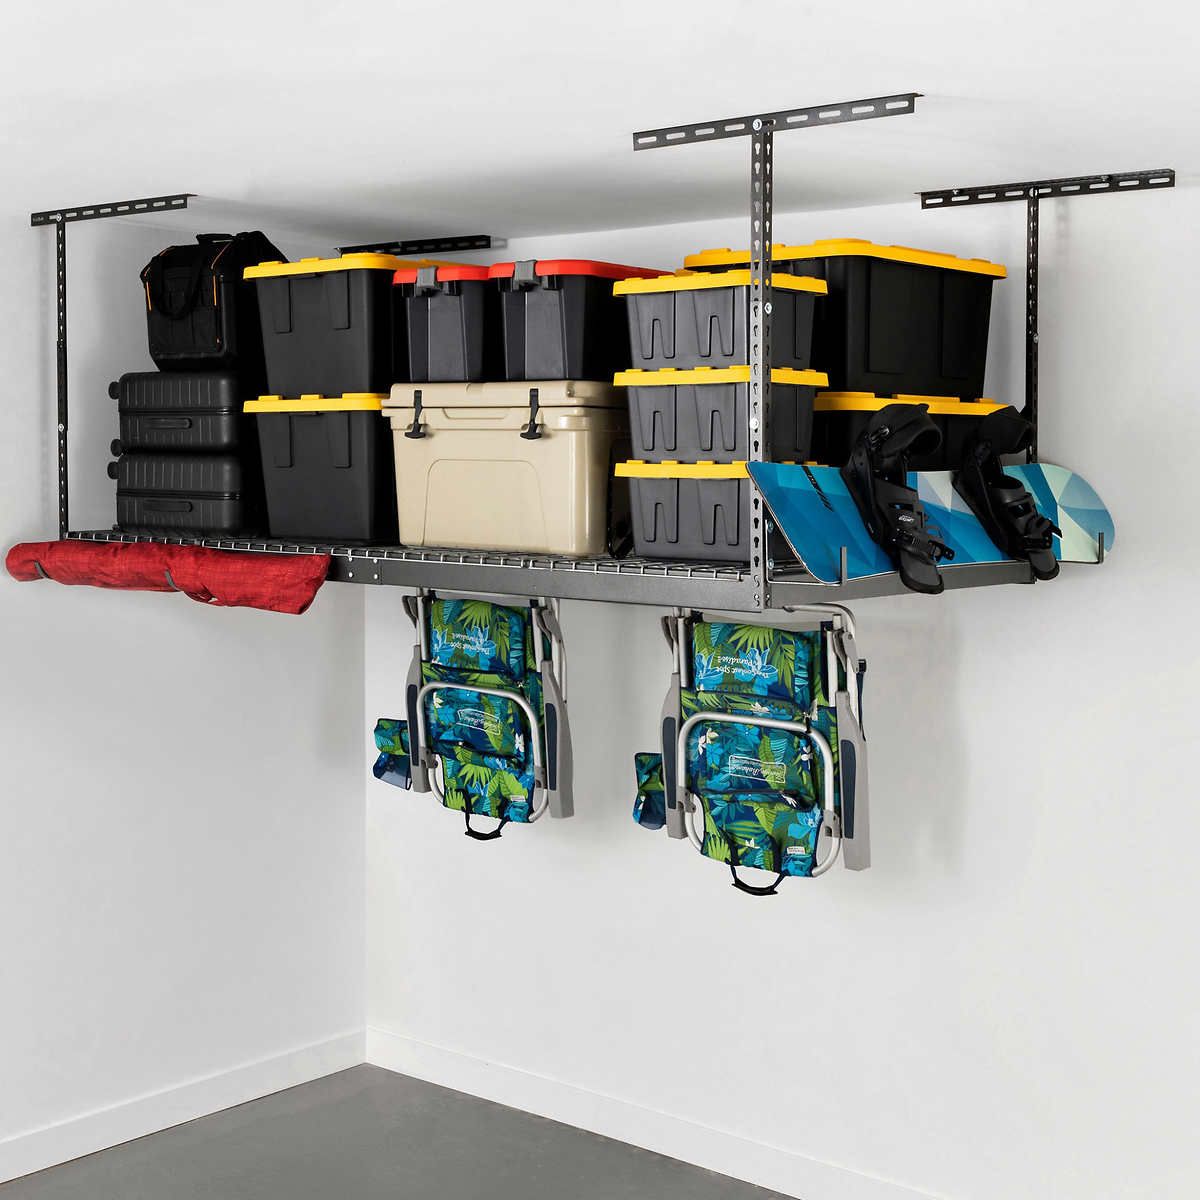 Overhead Garage Storage Rack, Garage Shelving Installation